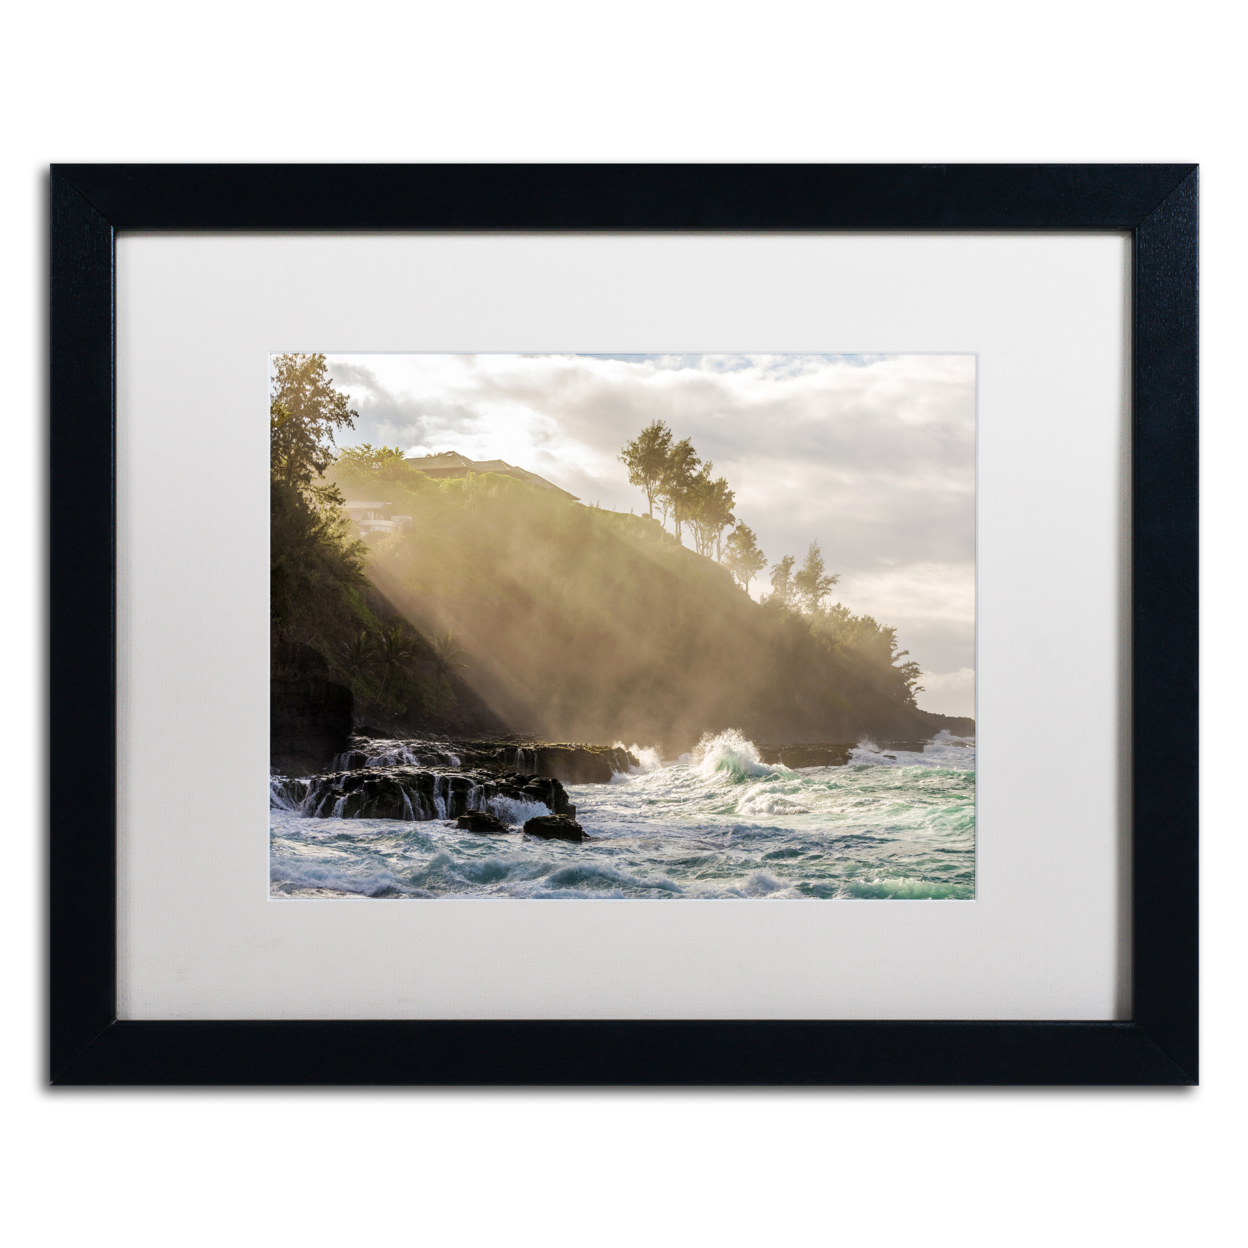 Pierre Leclerc 'Beach Sunlight' Black Wooden Framed Art 18 X 22 Inches